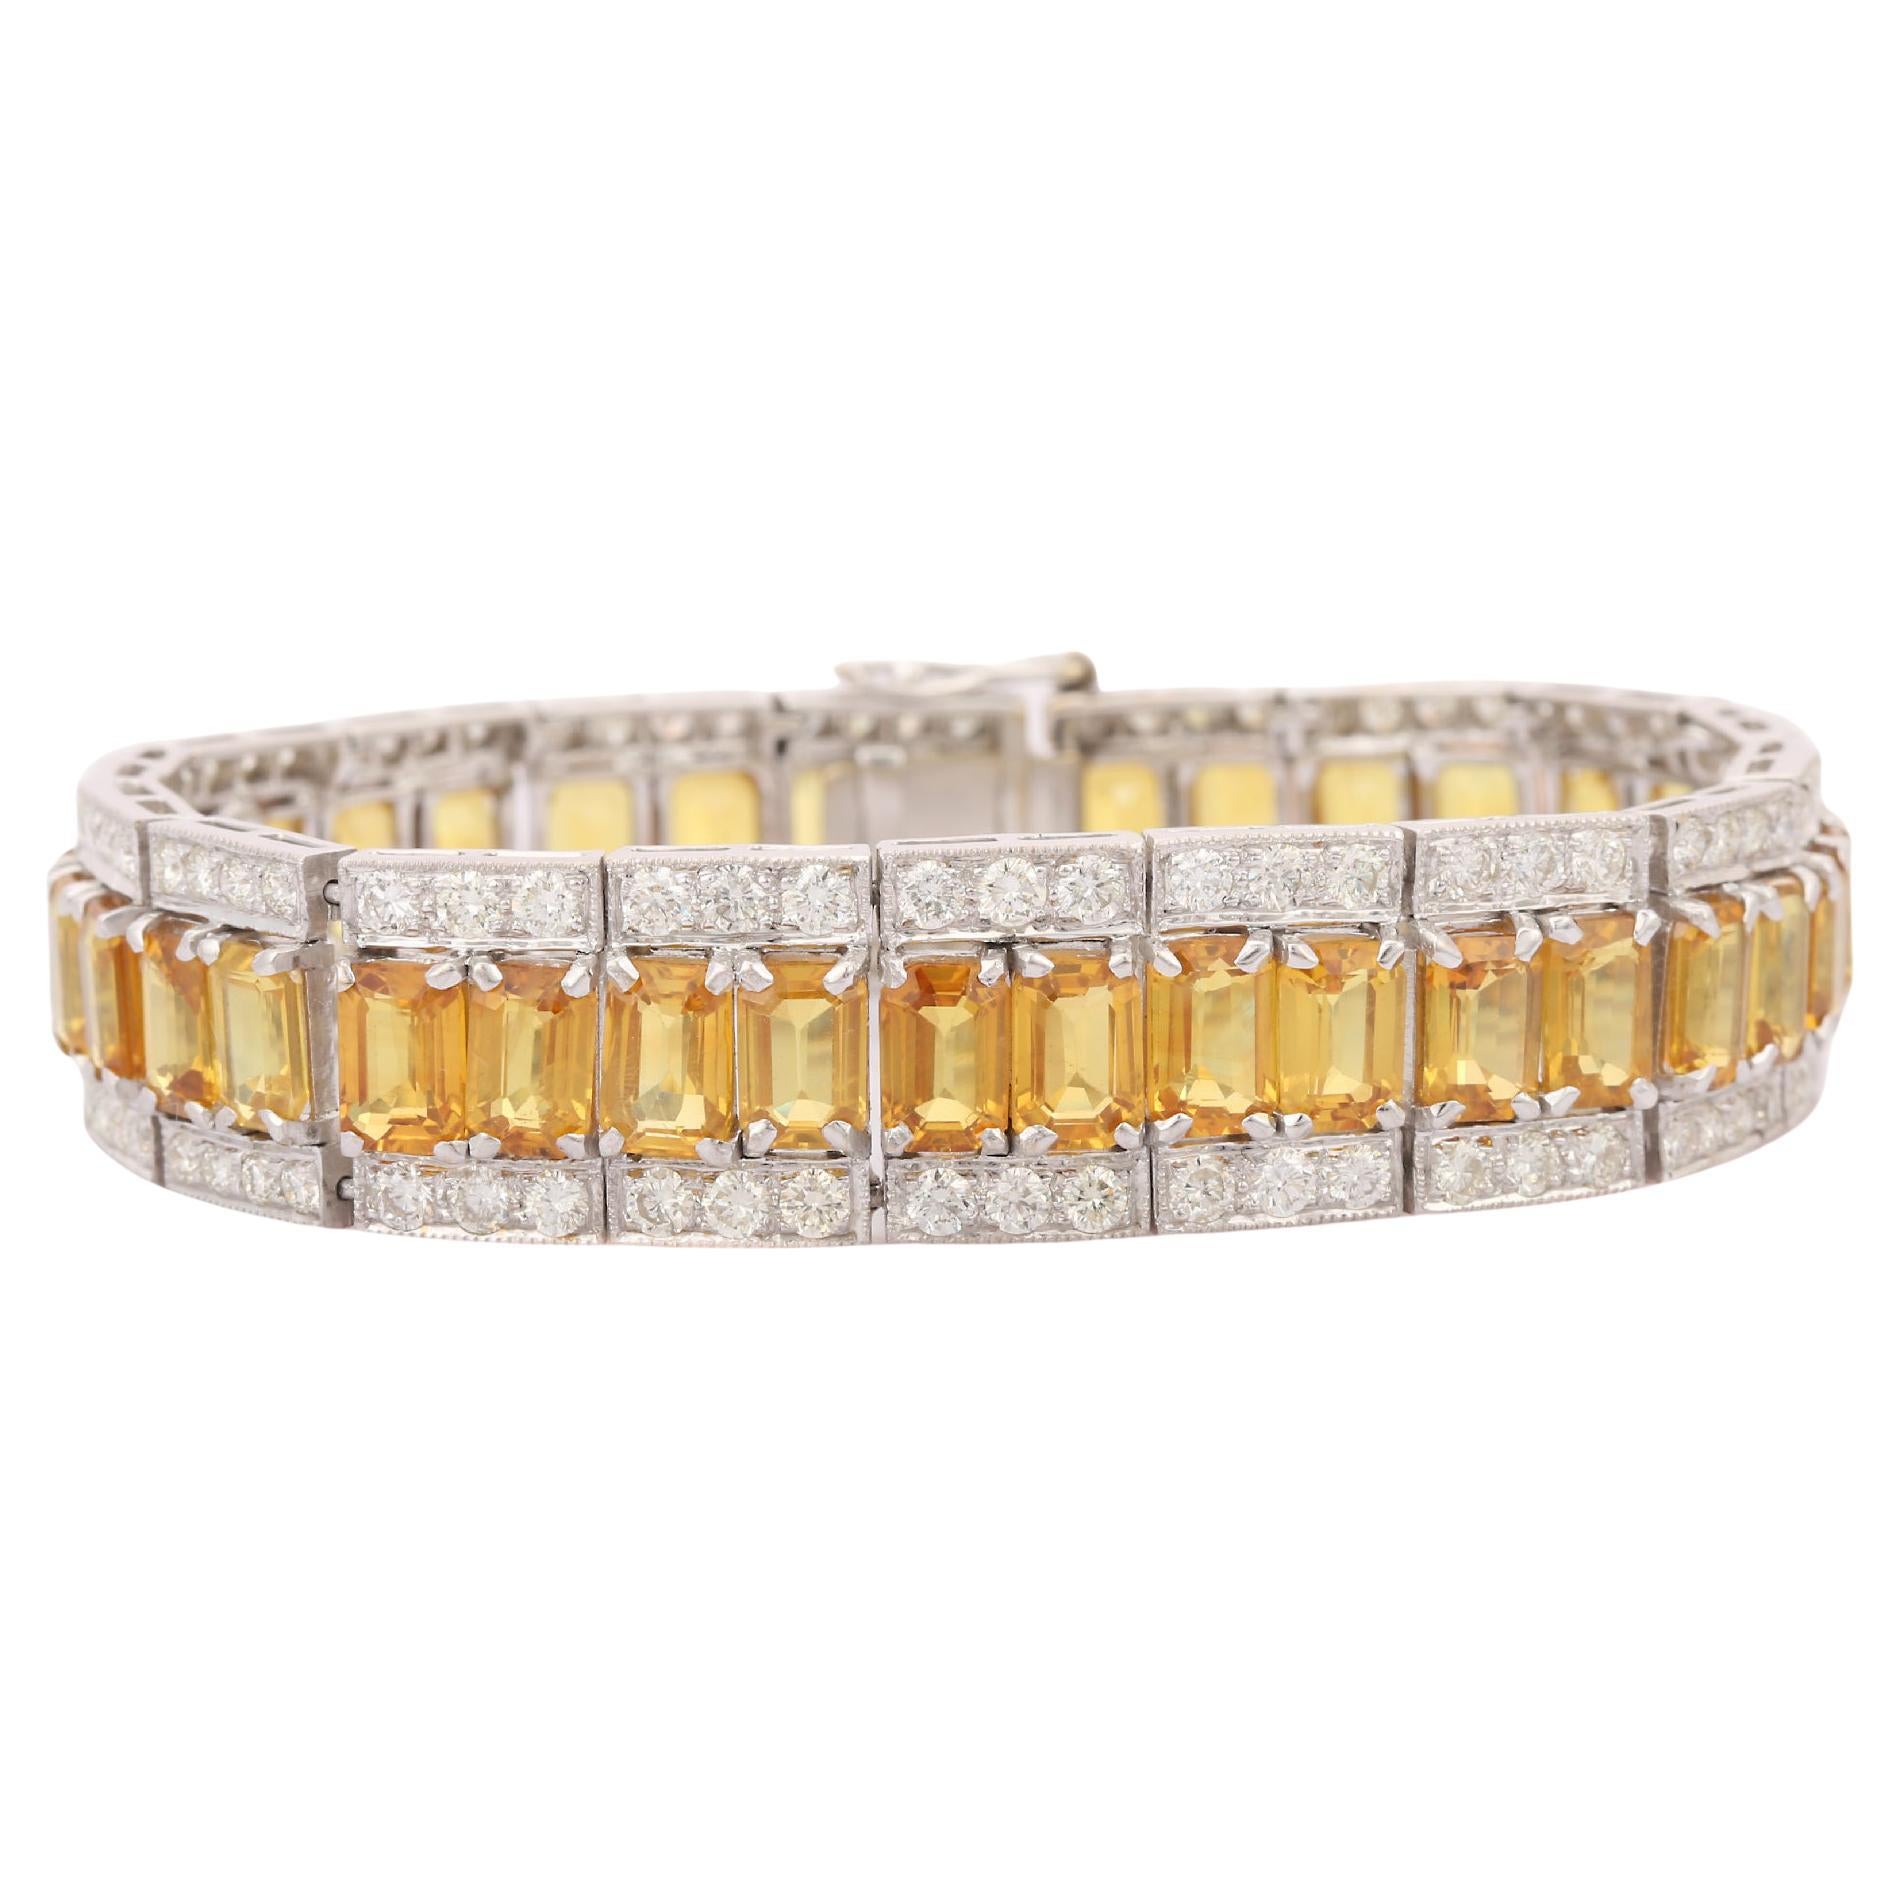 Armband aus 18 Karat massivem Weißgold mit natürlichem 37,87 Karat gelbem Saphir und 5,34 Karat Diamant